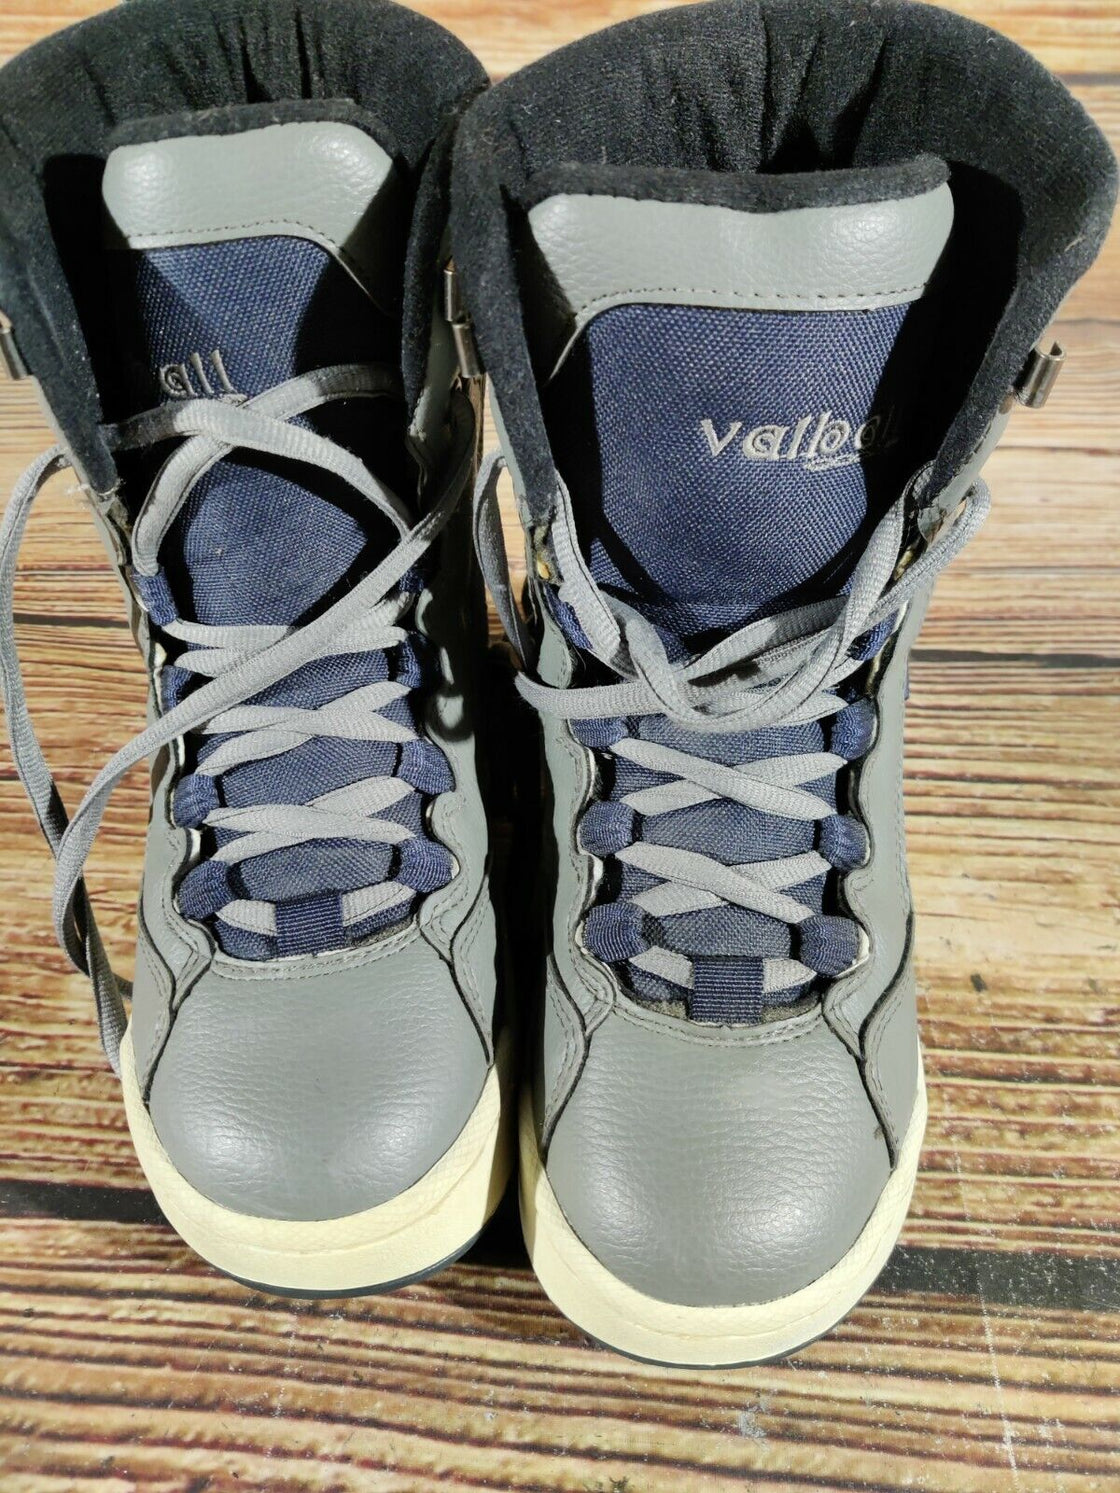 WALBALL Snowboard Boots Size EU37, US5, UK4.5, Mondo 240 mm B